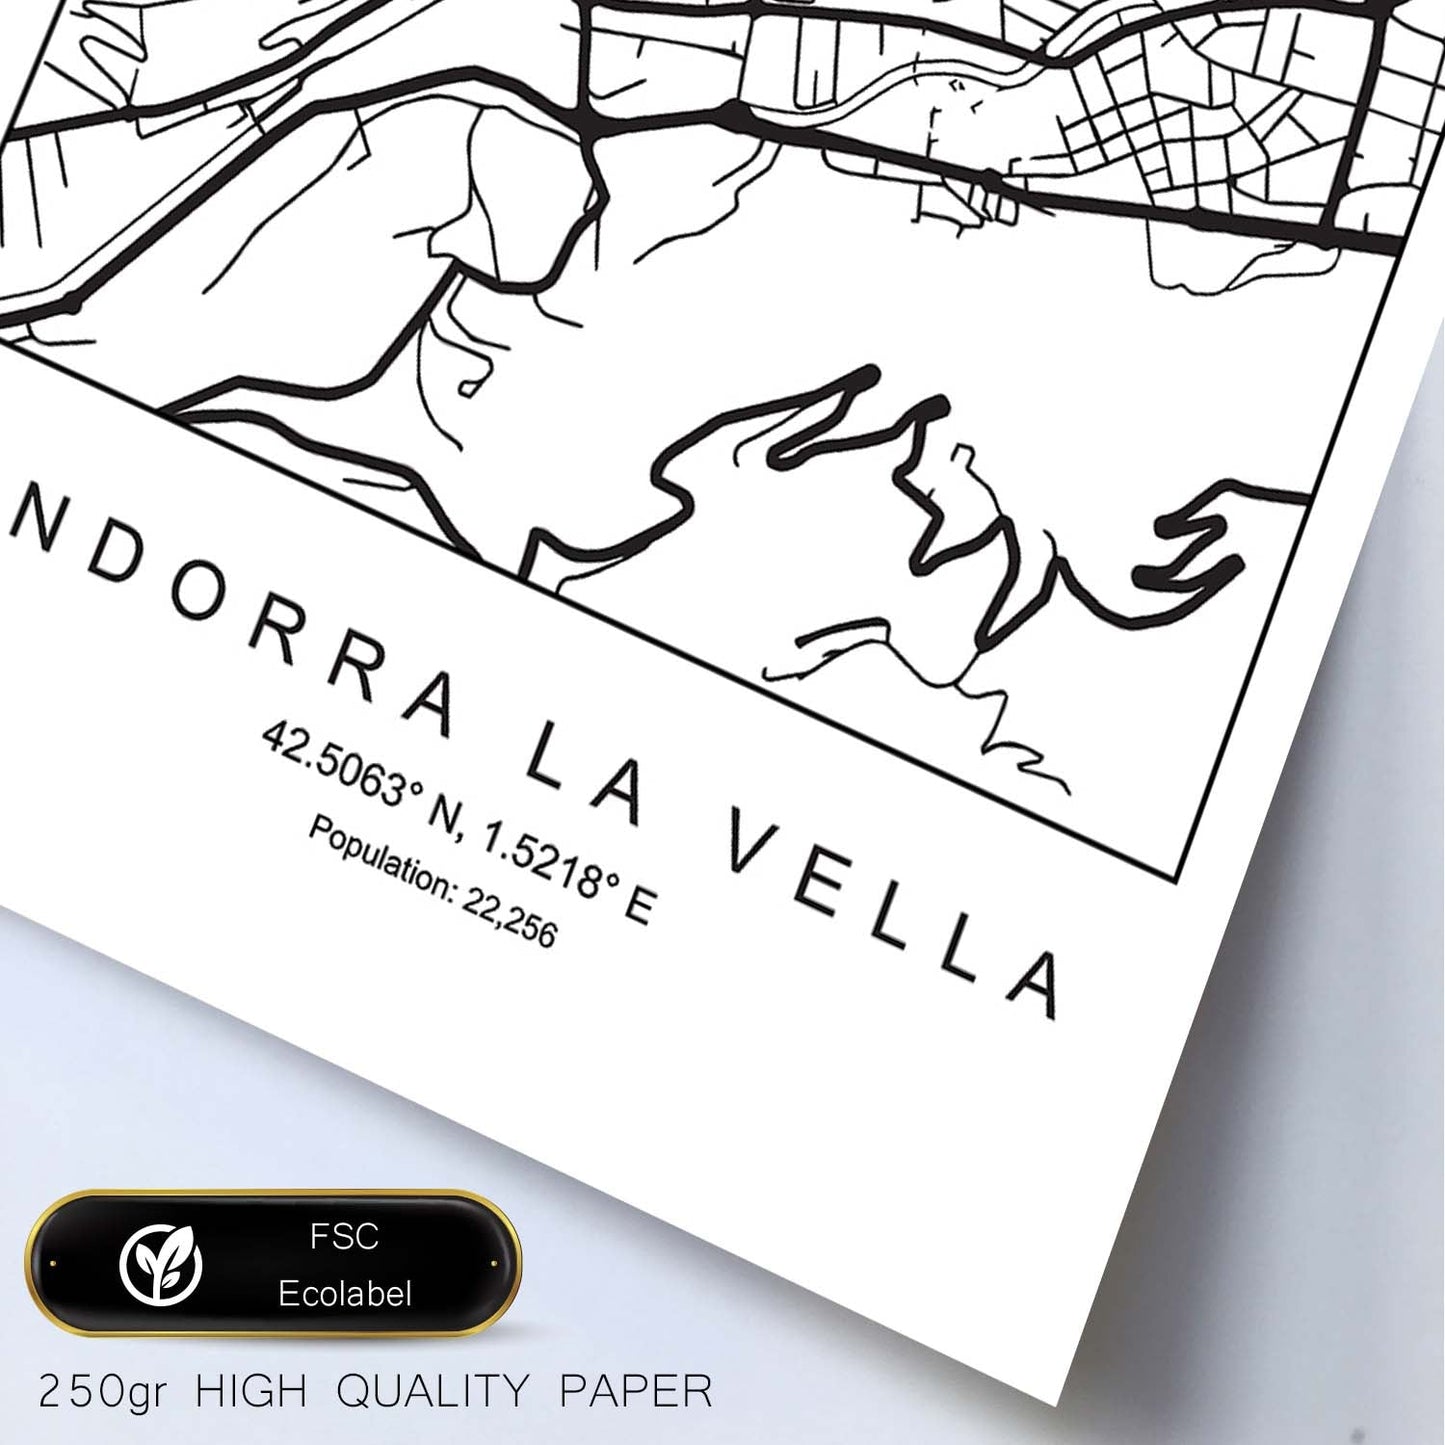 Lámina mapa de la ciudad Andorra la vella estilo nordico en blanco y negro.-Artwork-Nacnic-Nacnic Estudio SL